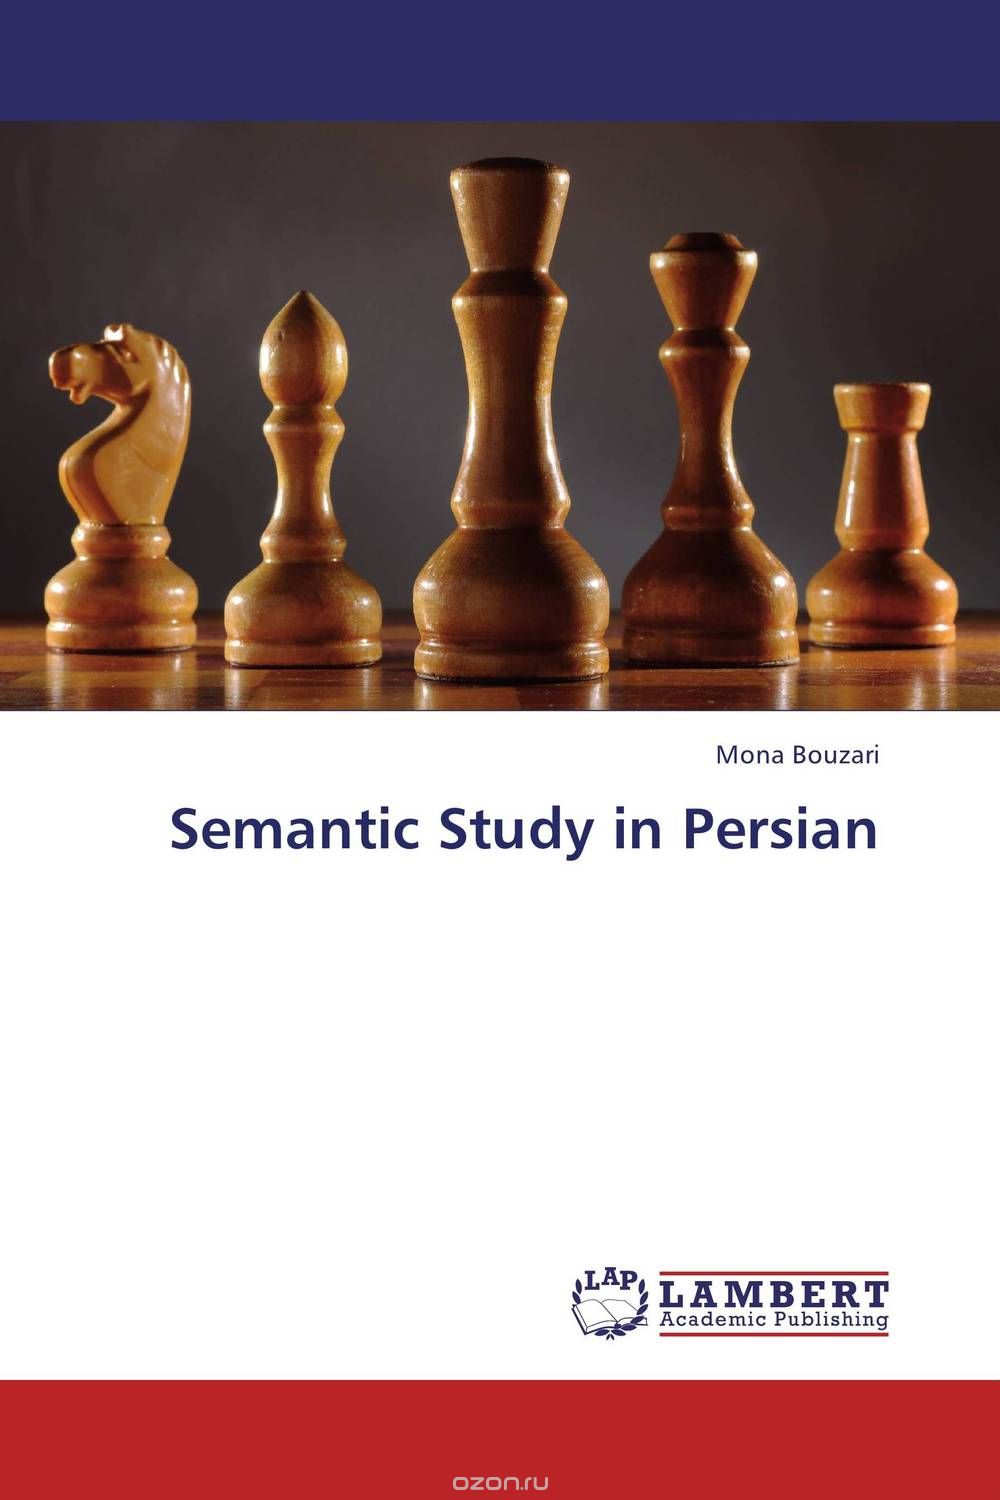 Скачать книгу "Semantic Study in Persian"